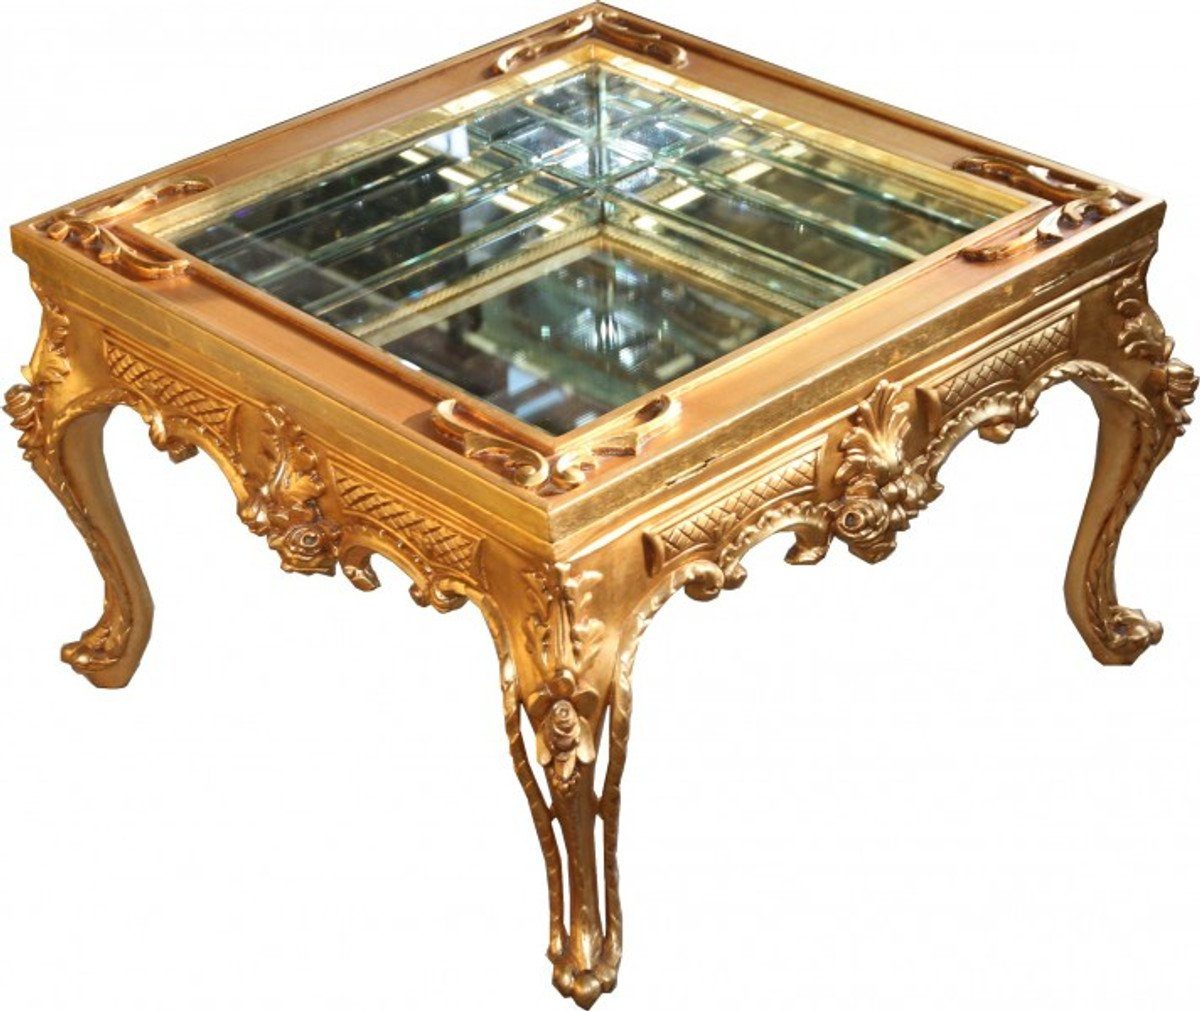 Casa Padrino Beistelltisch Prunkvoller Barock Couchtisch Gold verspiegelt mit aufklappbaren Glasdeckel 67 x 67 cm Unikat- Salon Tisch Möbel